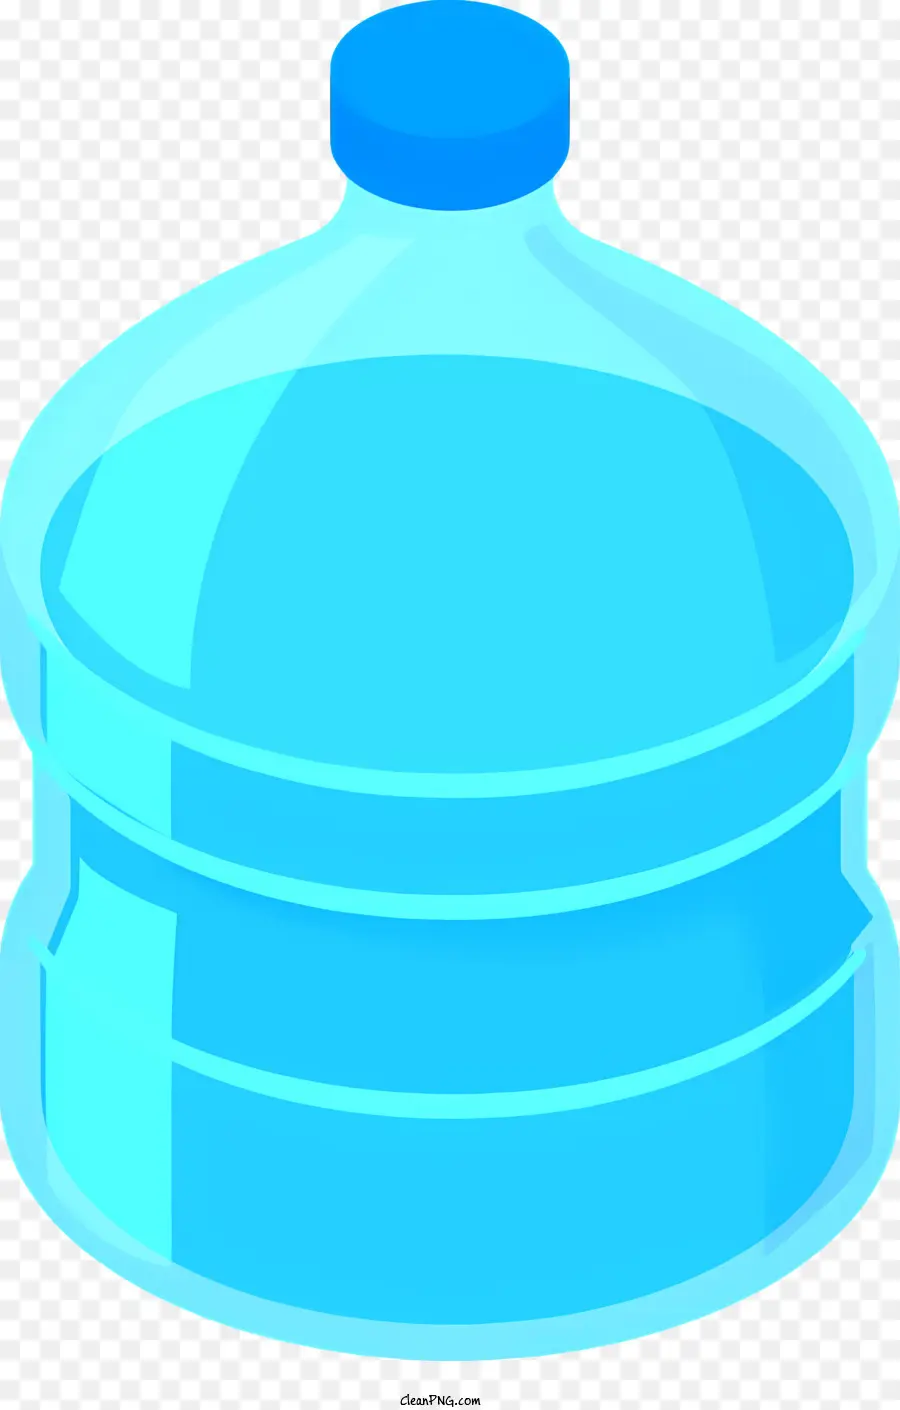 Icon chai nước trong suốt chai nhựa trong suốt - Chai nước trơn với nhựa trong suốt và nắp màu xanh